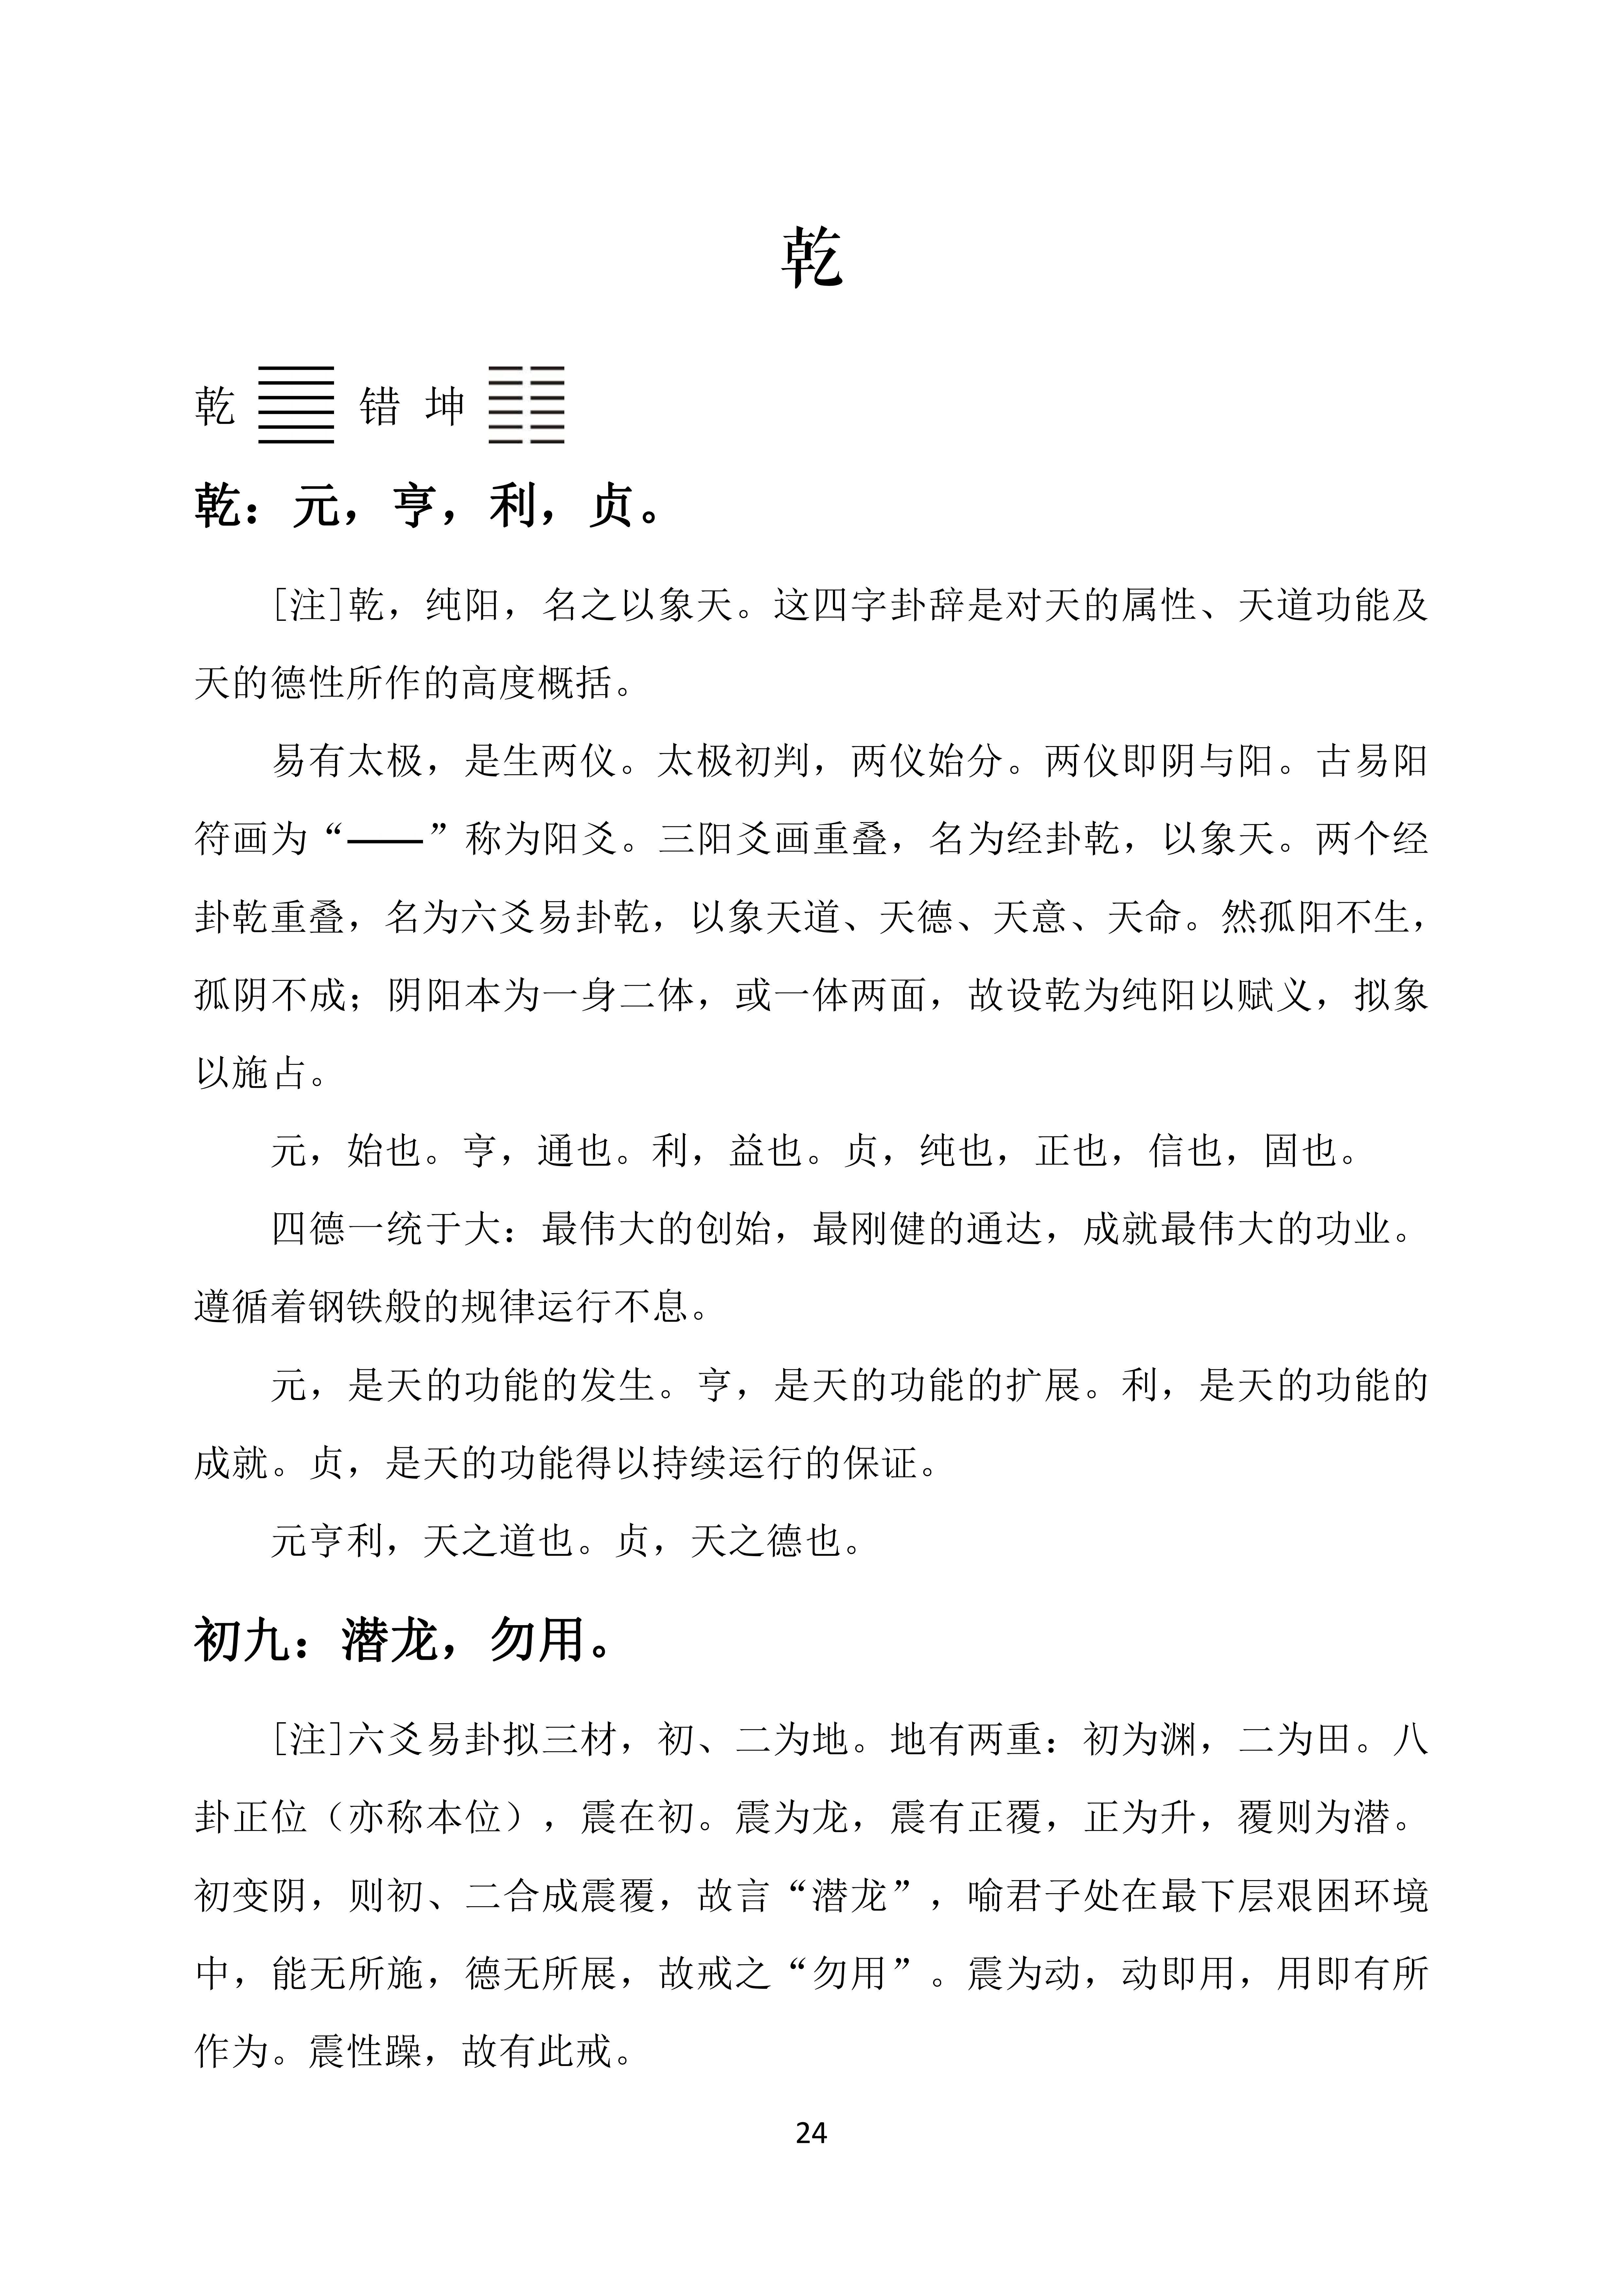 南怀瑾老先生书写的《易经杂说》中的部分内容介绍